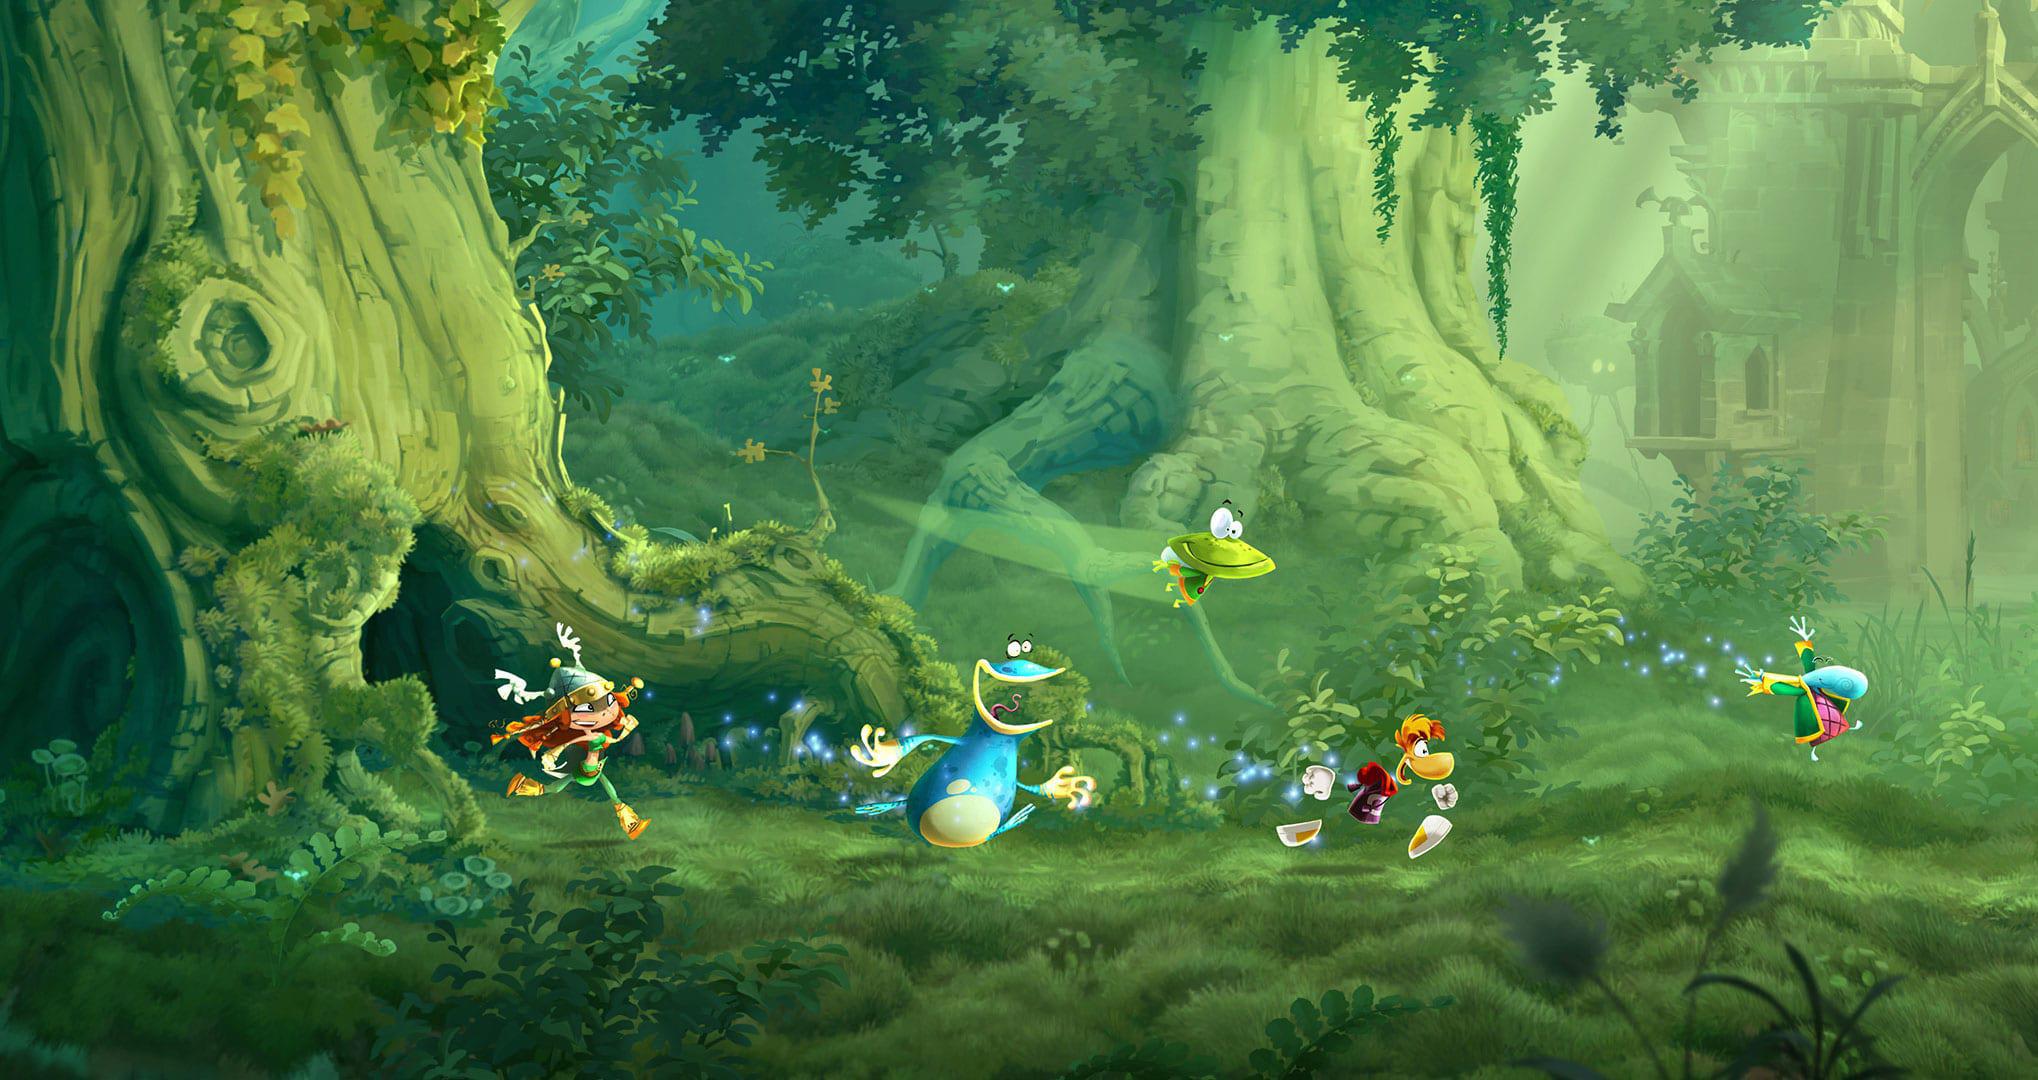 Jogo Rayman Legends Retrocompativel Para Xbox 360 E One